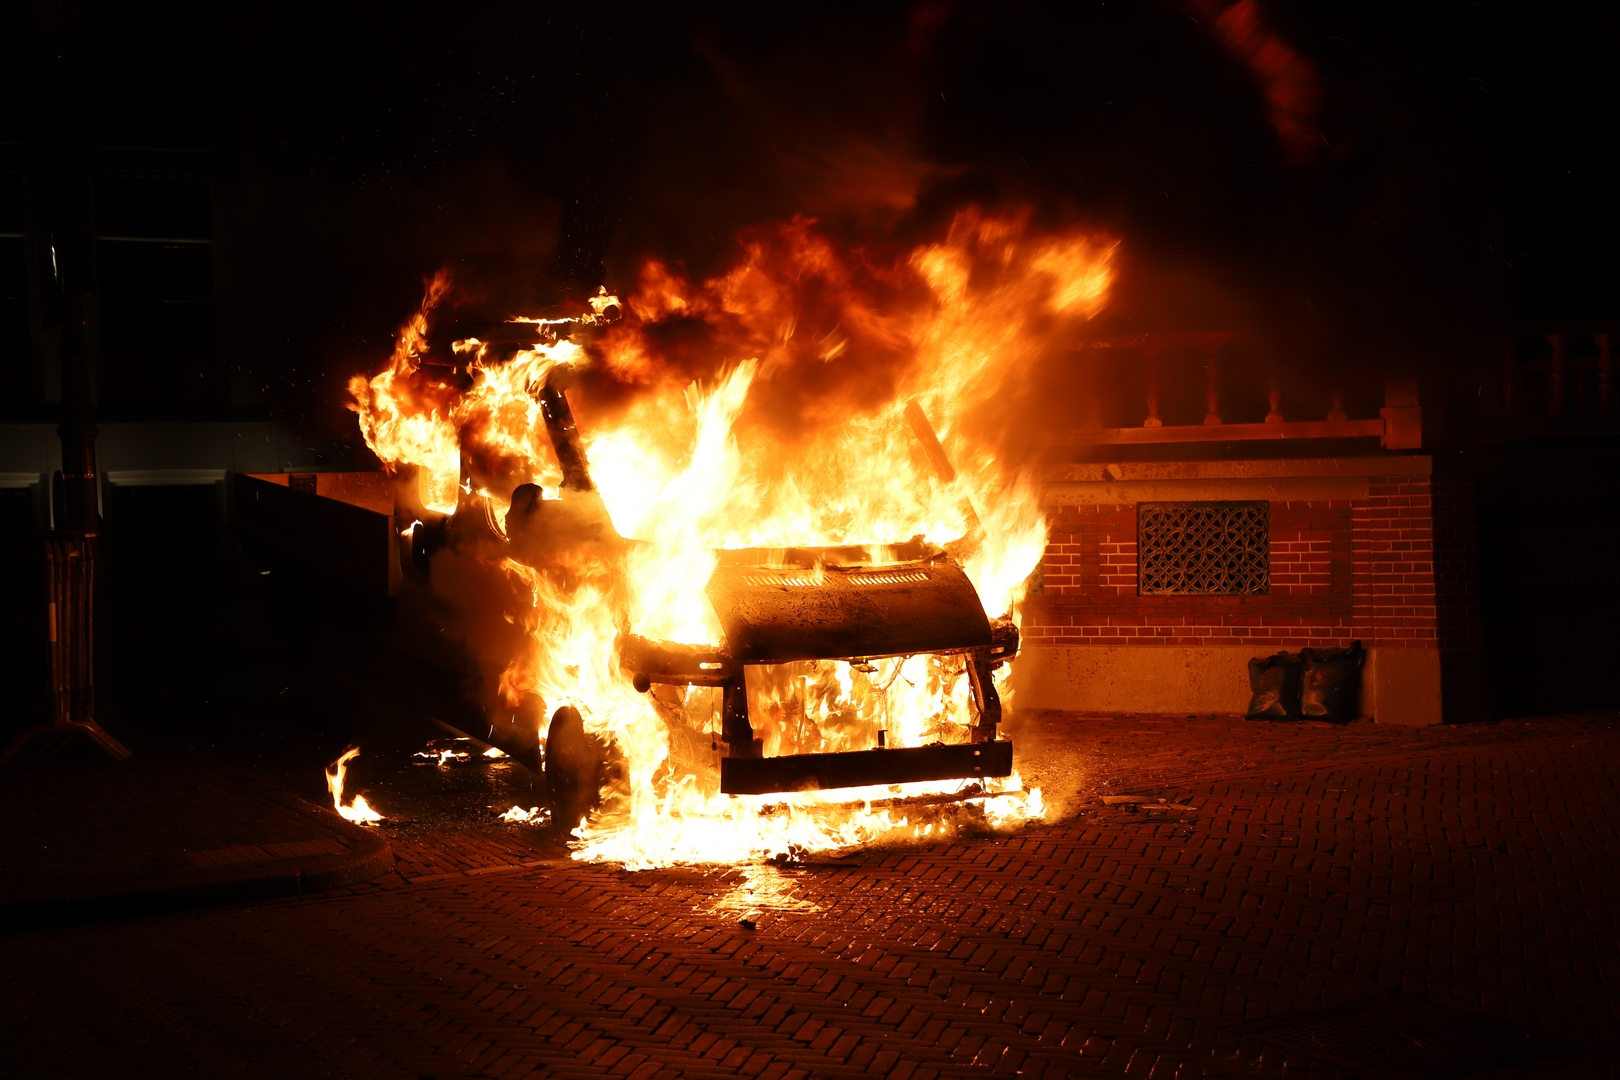 Bedrijfswagen brand uit naast historische Muziektent Nieuw markt